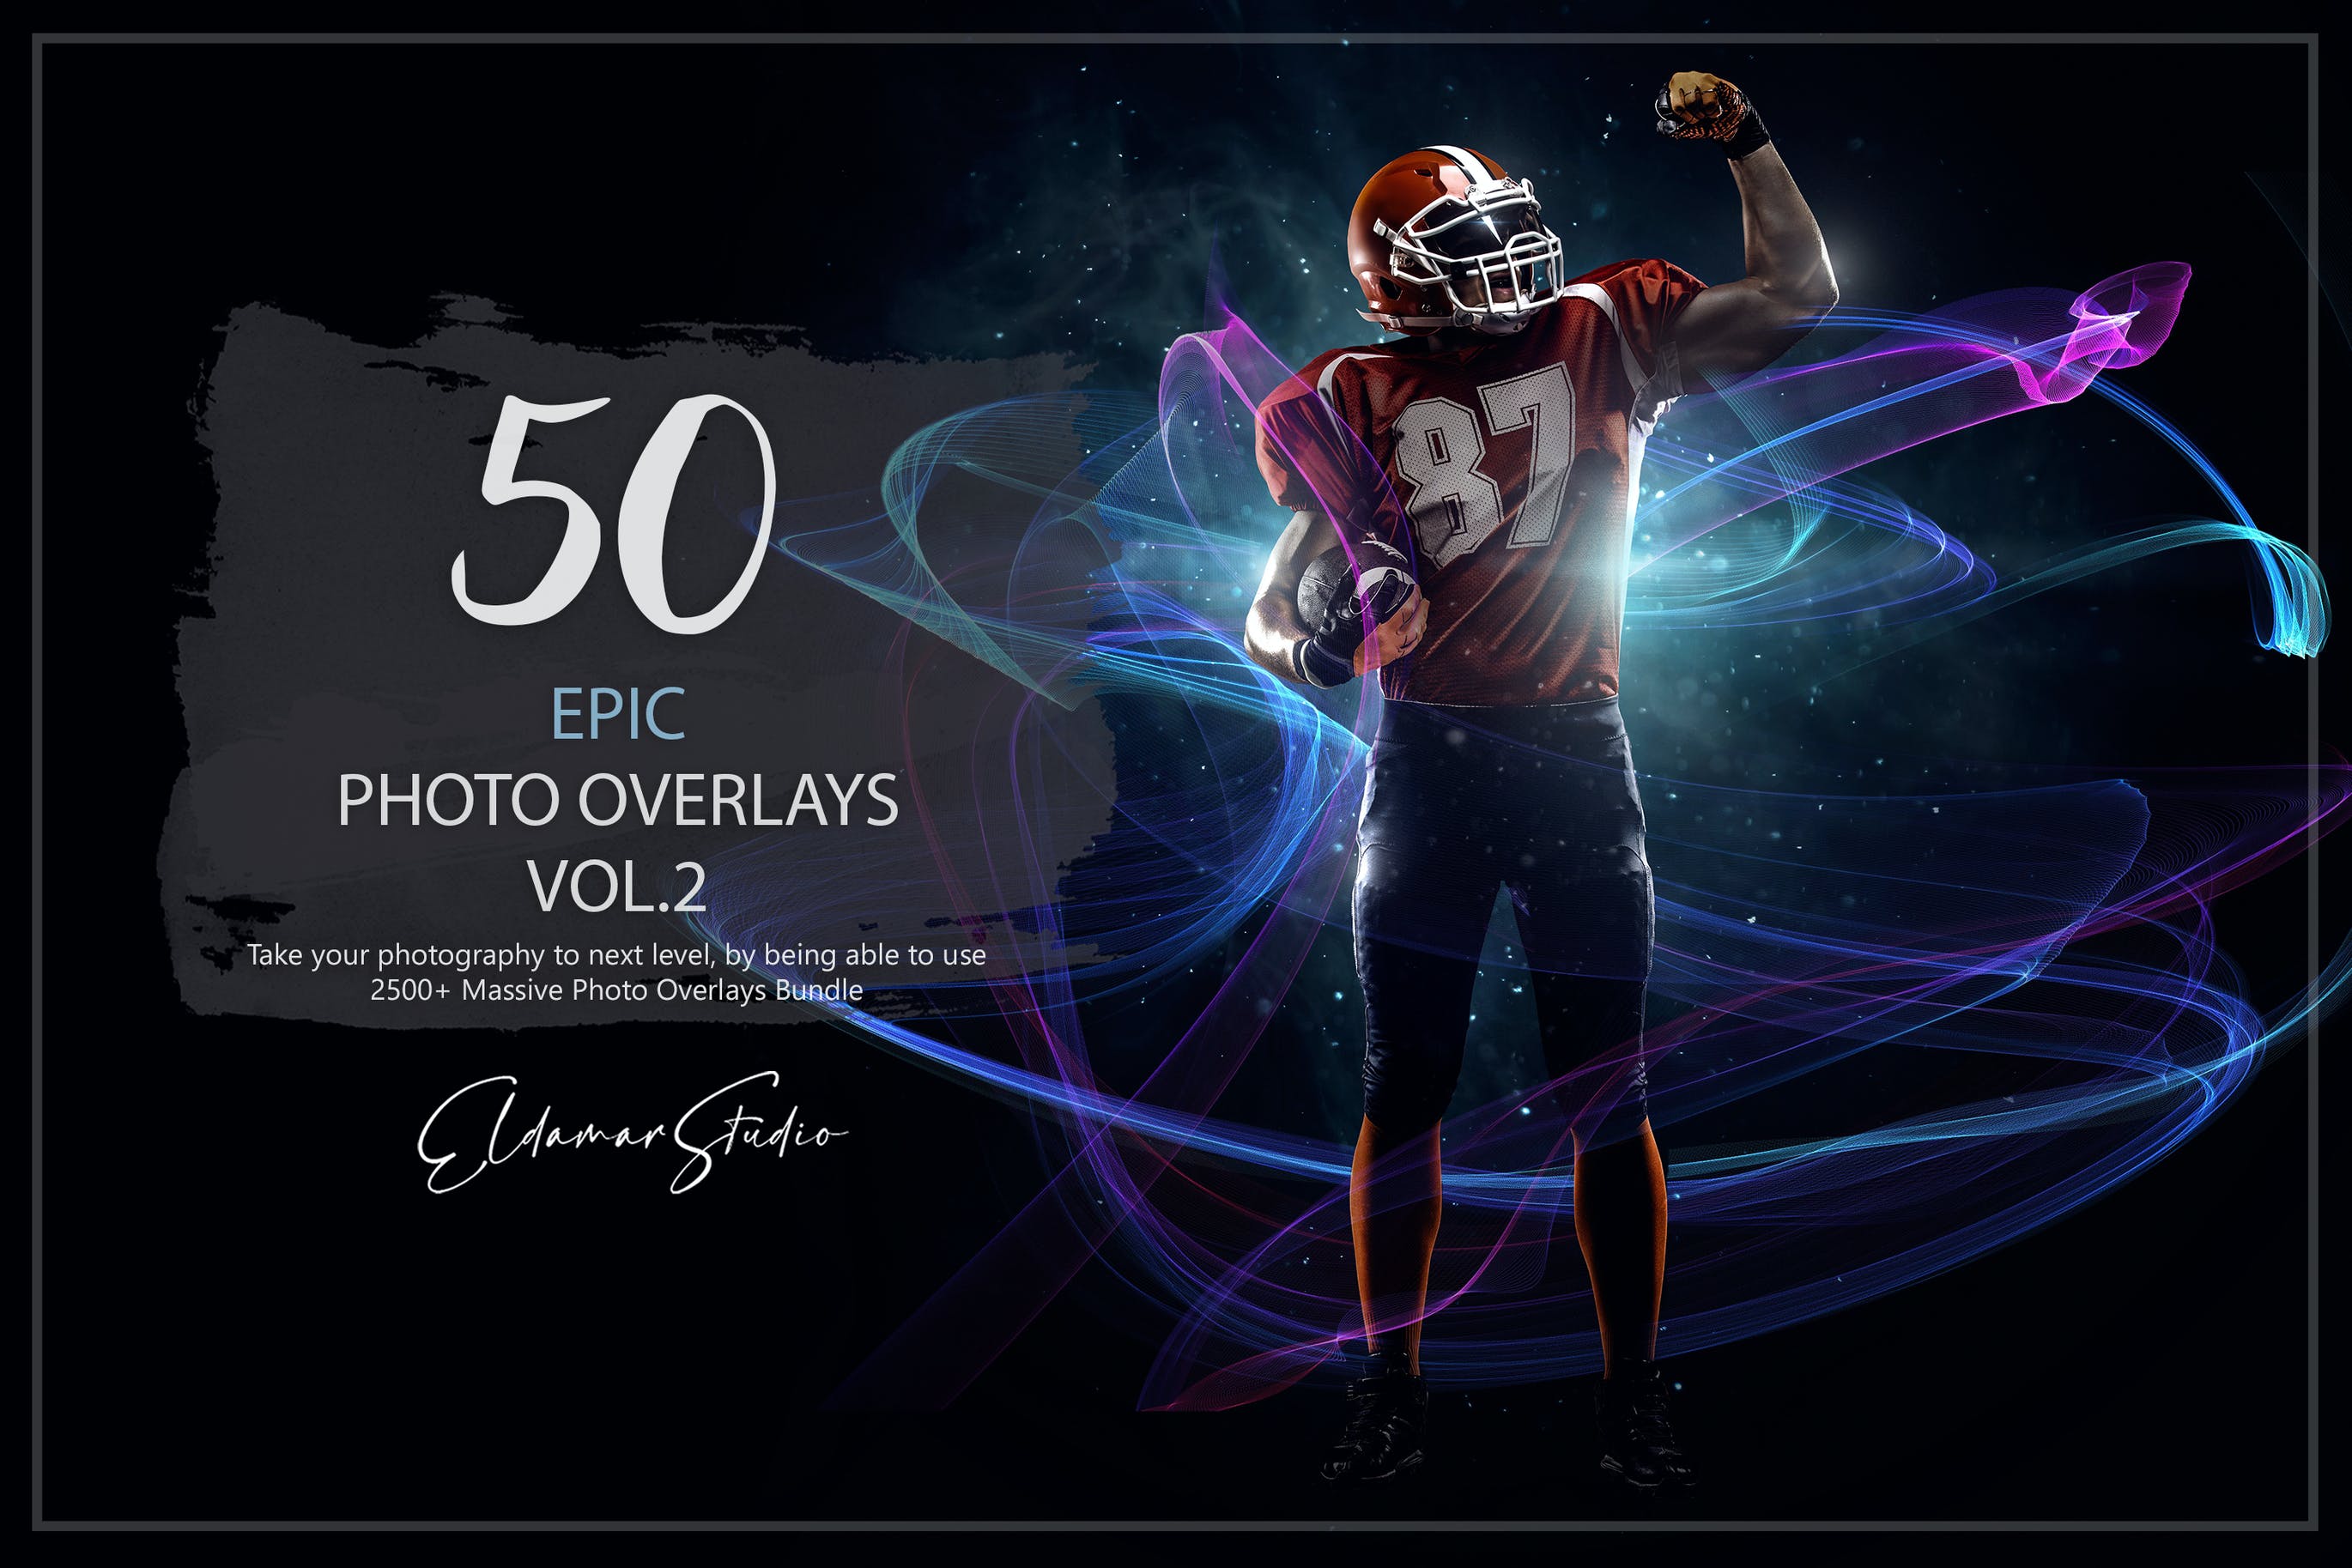 50个彩色线条照片叠层背景素材v2 50 Epic Photo Overlays – Vol. 2 插件预设 第1张